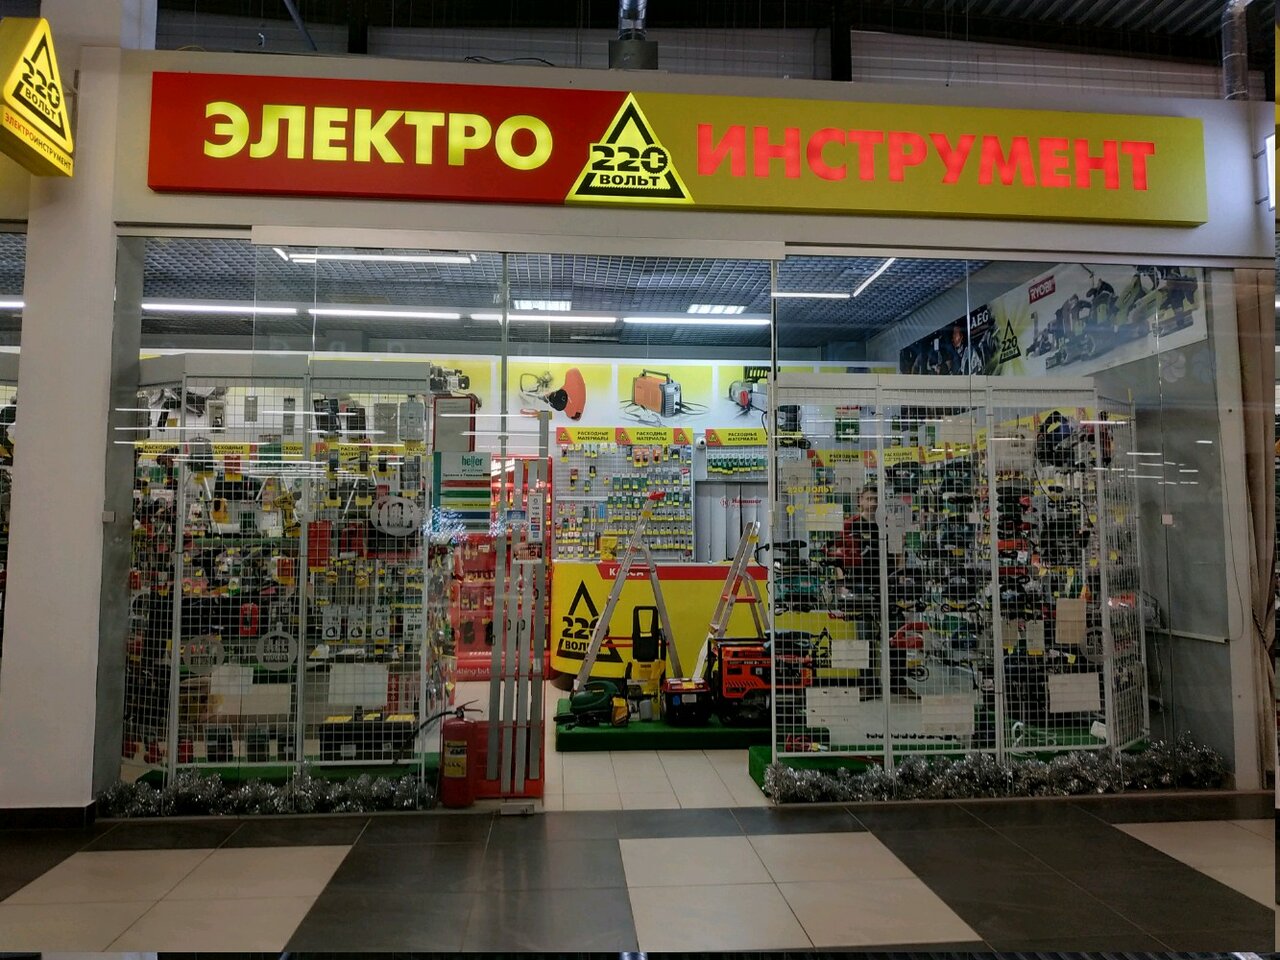 220 Вольт Магазин Минск